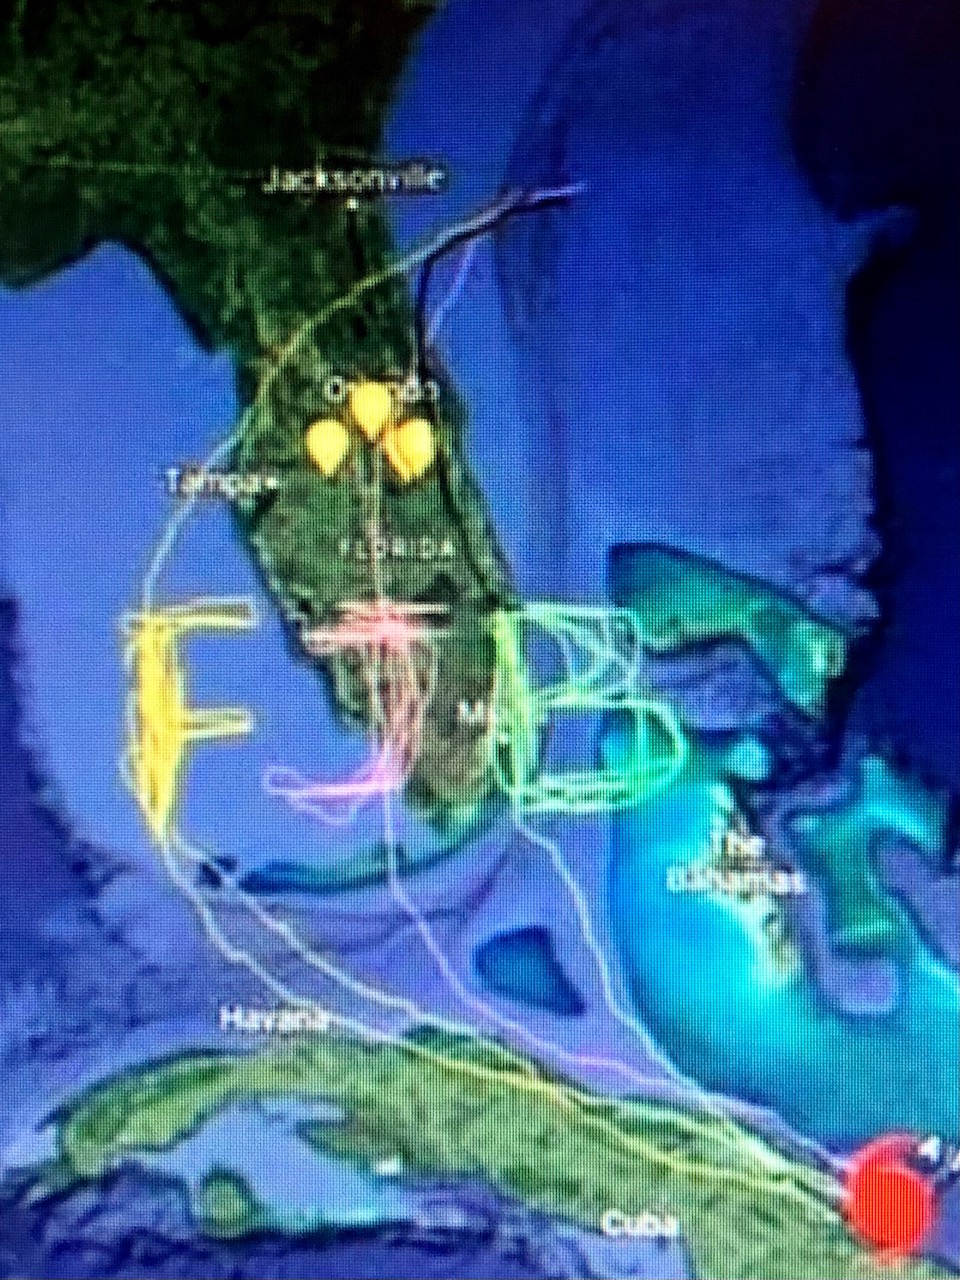 FJB hurricane track.jpg